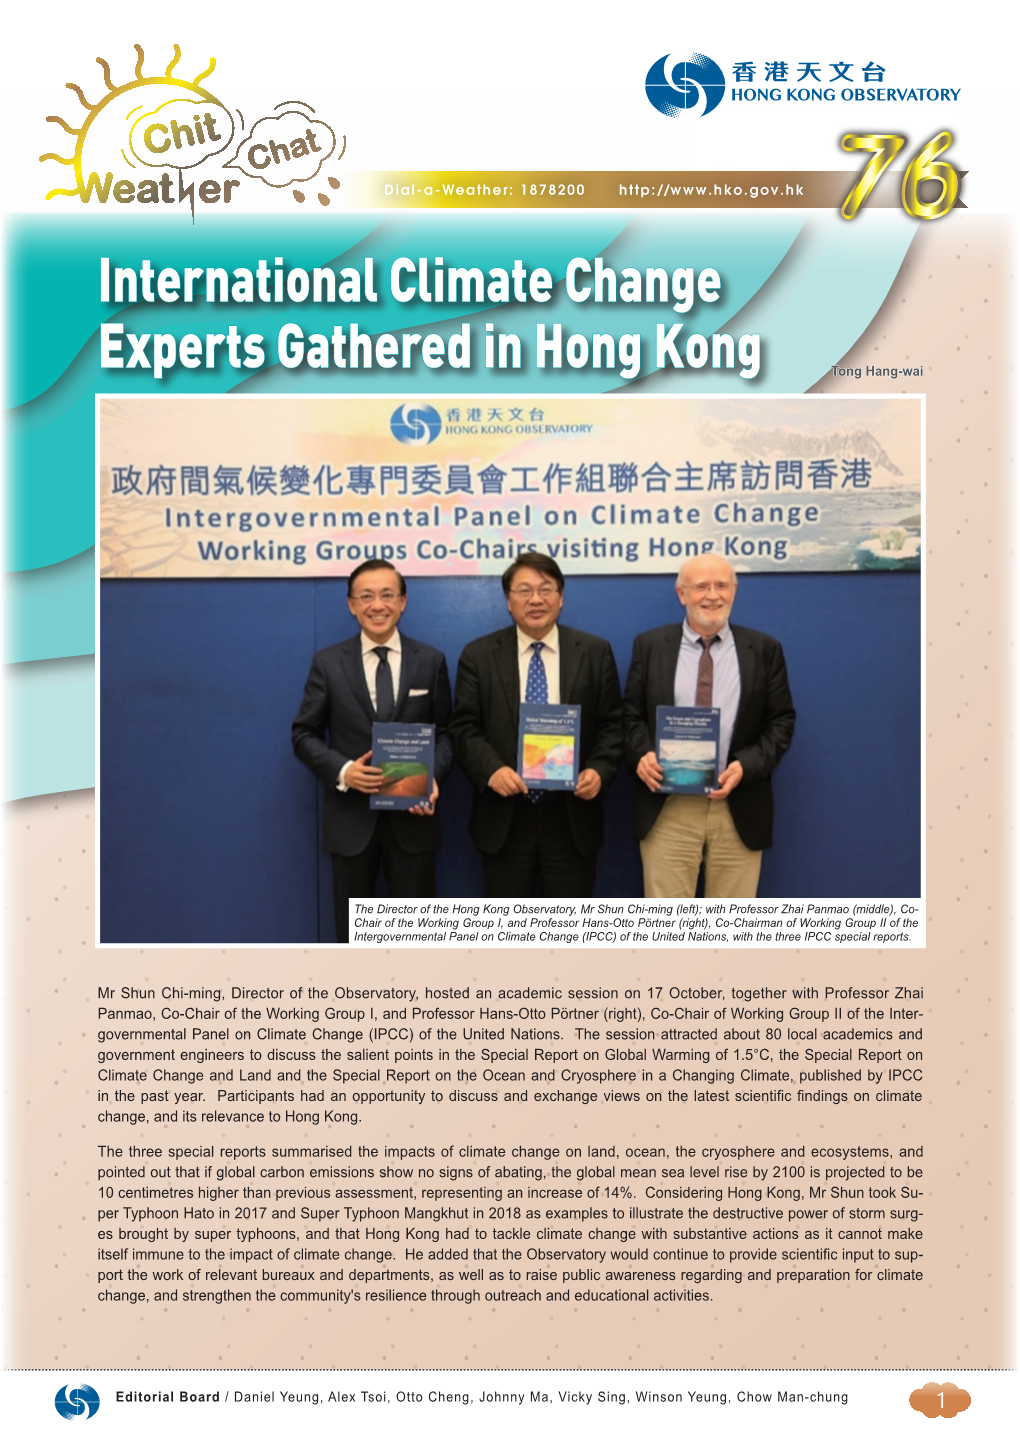 International Climate Change Experts Gathered in Hong Kong Tong Hang-Wai